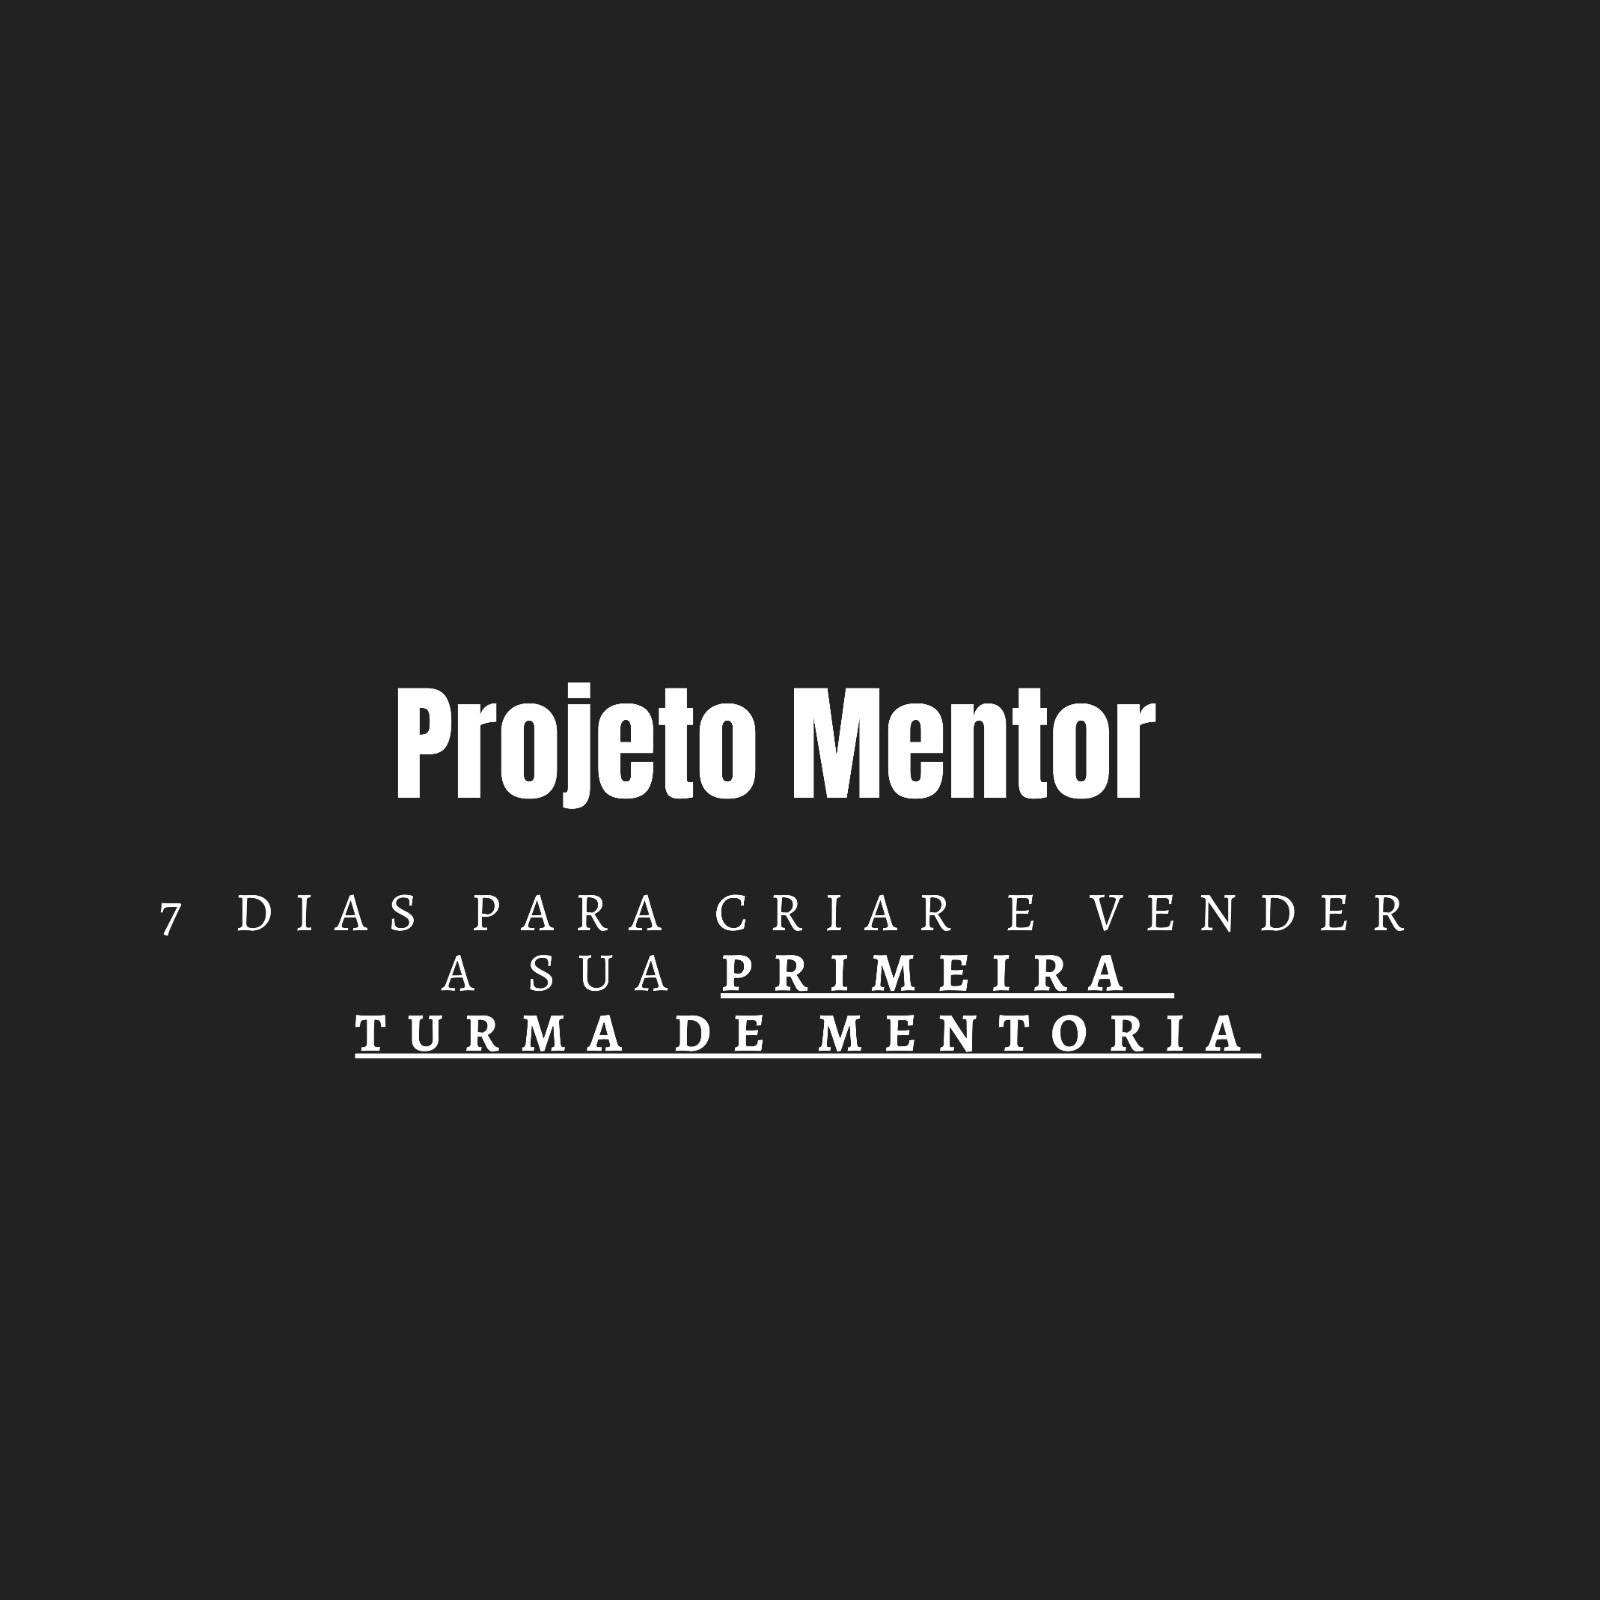 Projeto Mentor 206